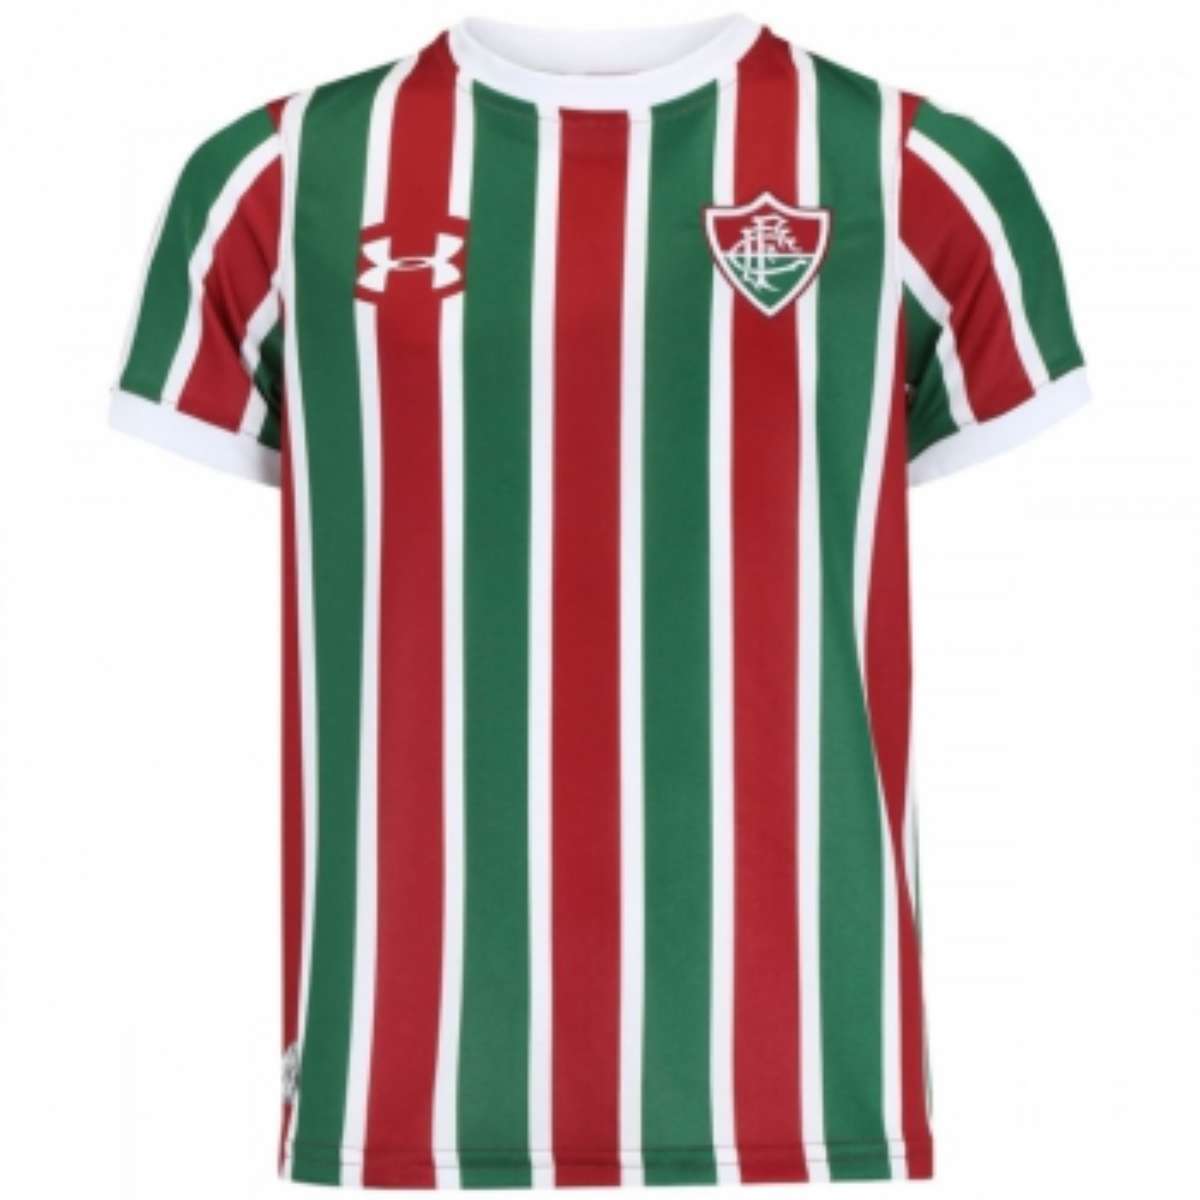 Site vendas vaza novo modelo infantil da camisa Fluminense